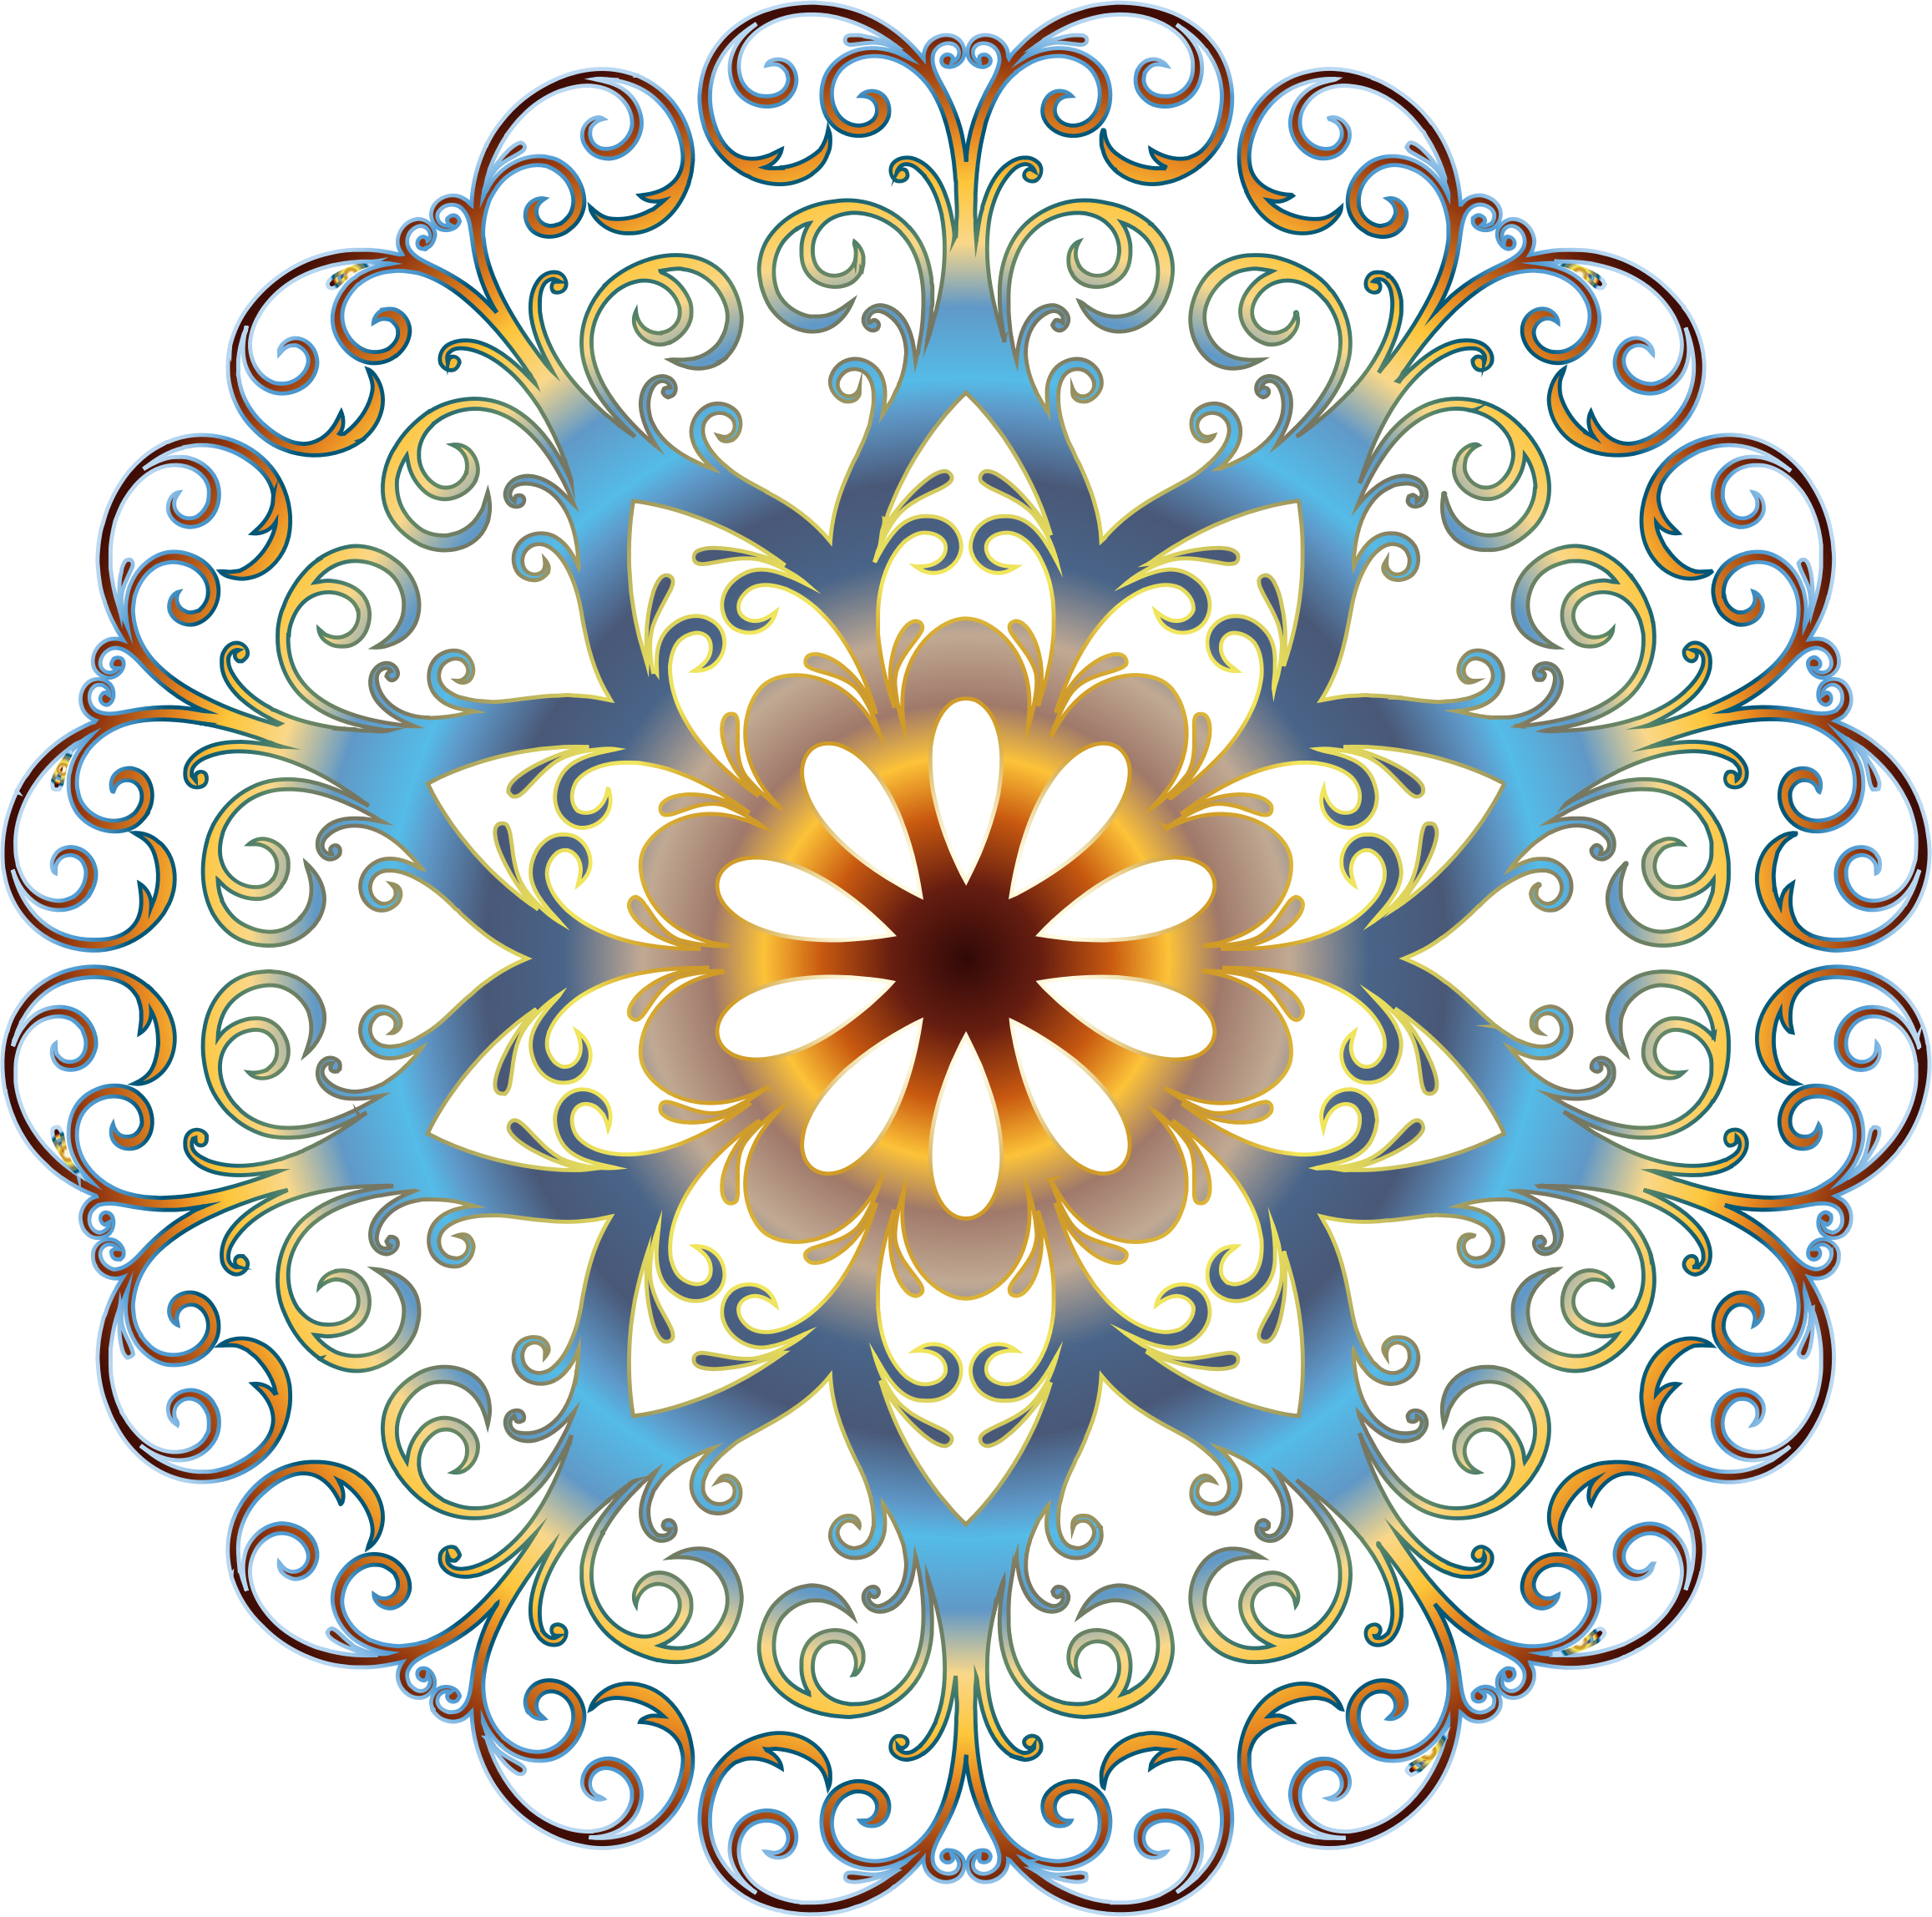 Big Image - Magic Day Mandala: Adult Coloring Book: 3 (2314x2296)